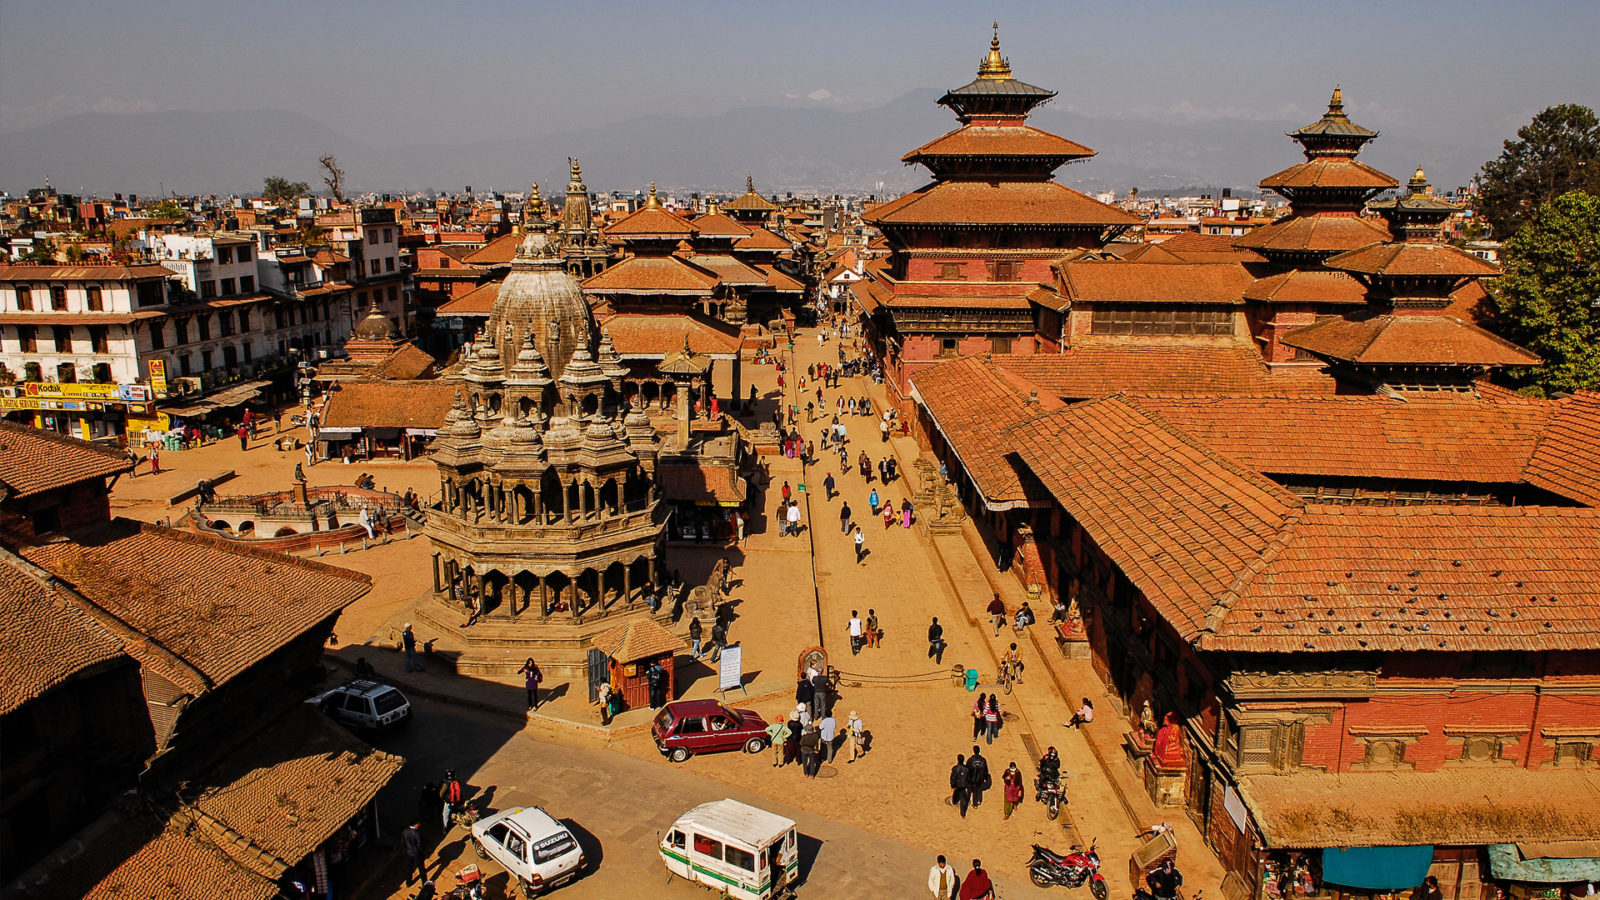 Kathmandu-Durbar-Square-Patan-1600x900.jpg